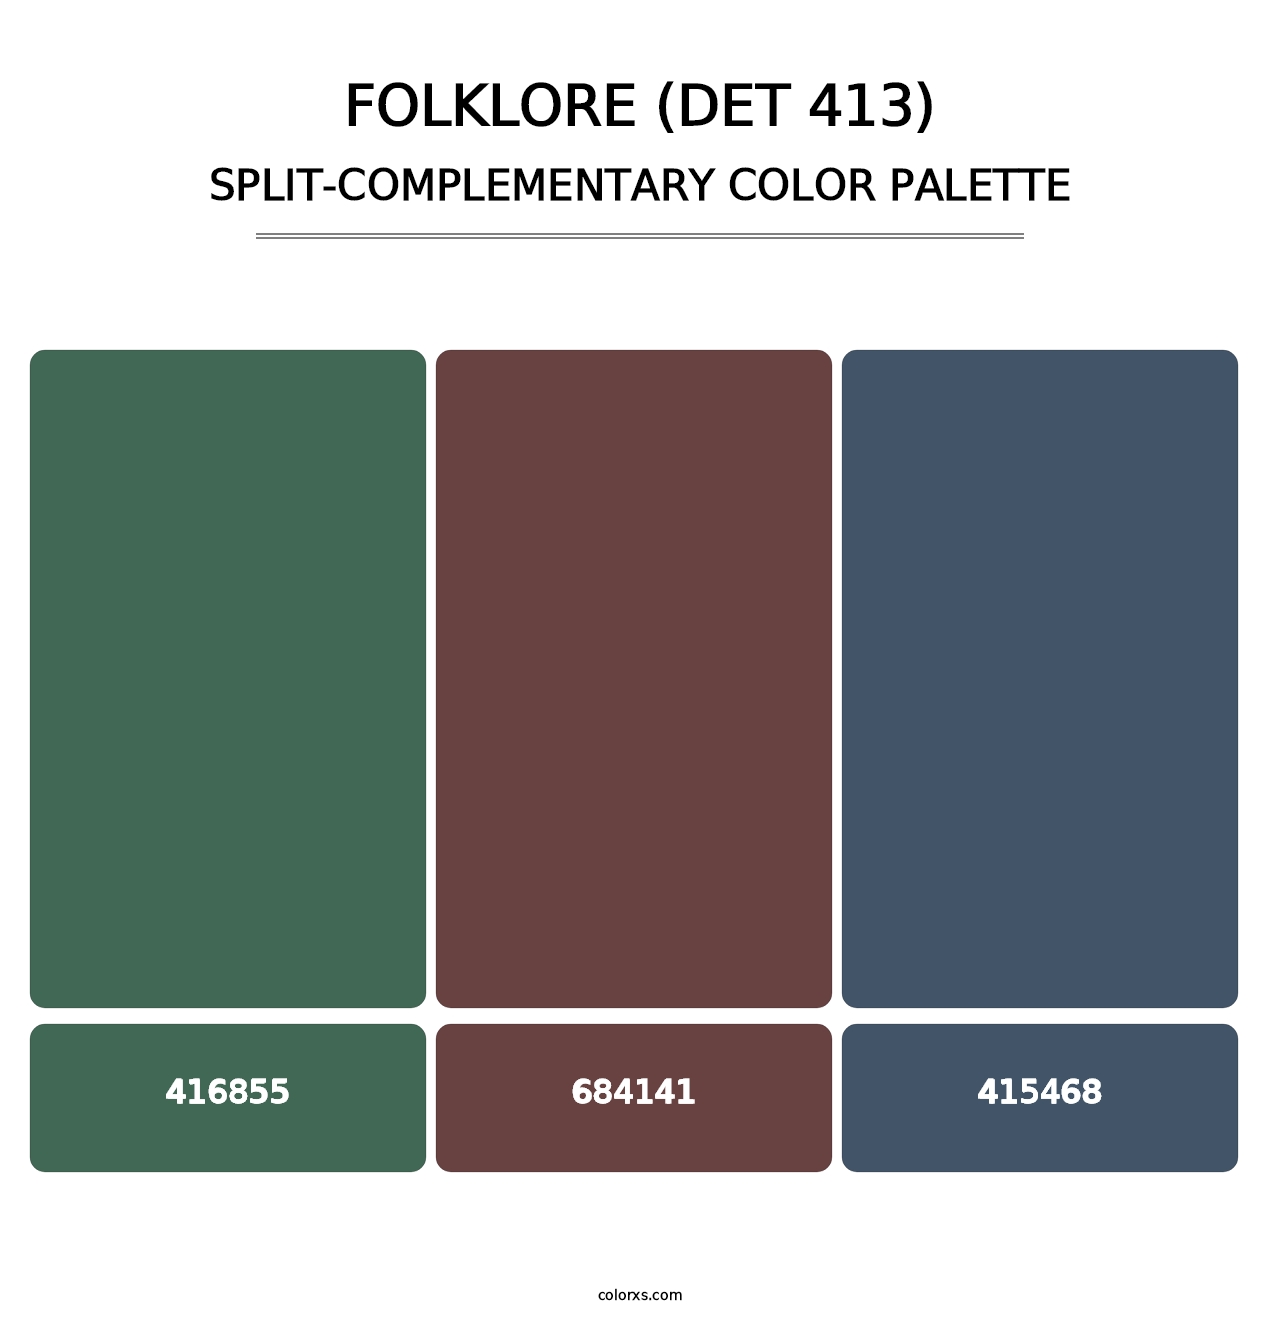 Folklore (DET 413) - Split-Complementary Color Palette